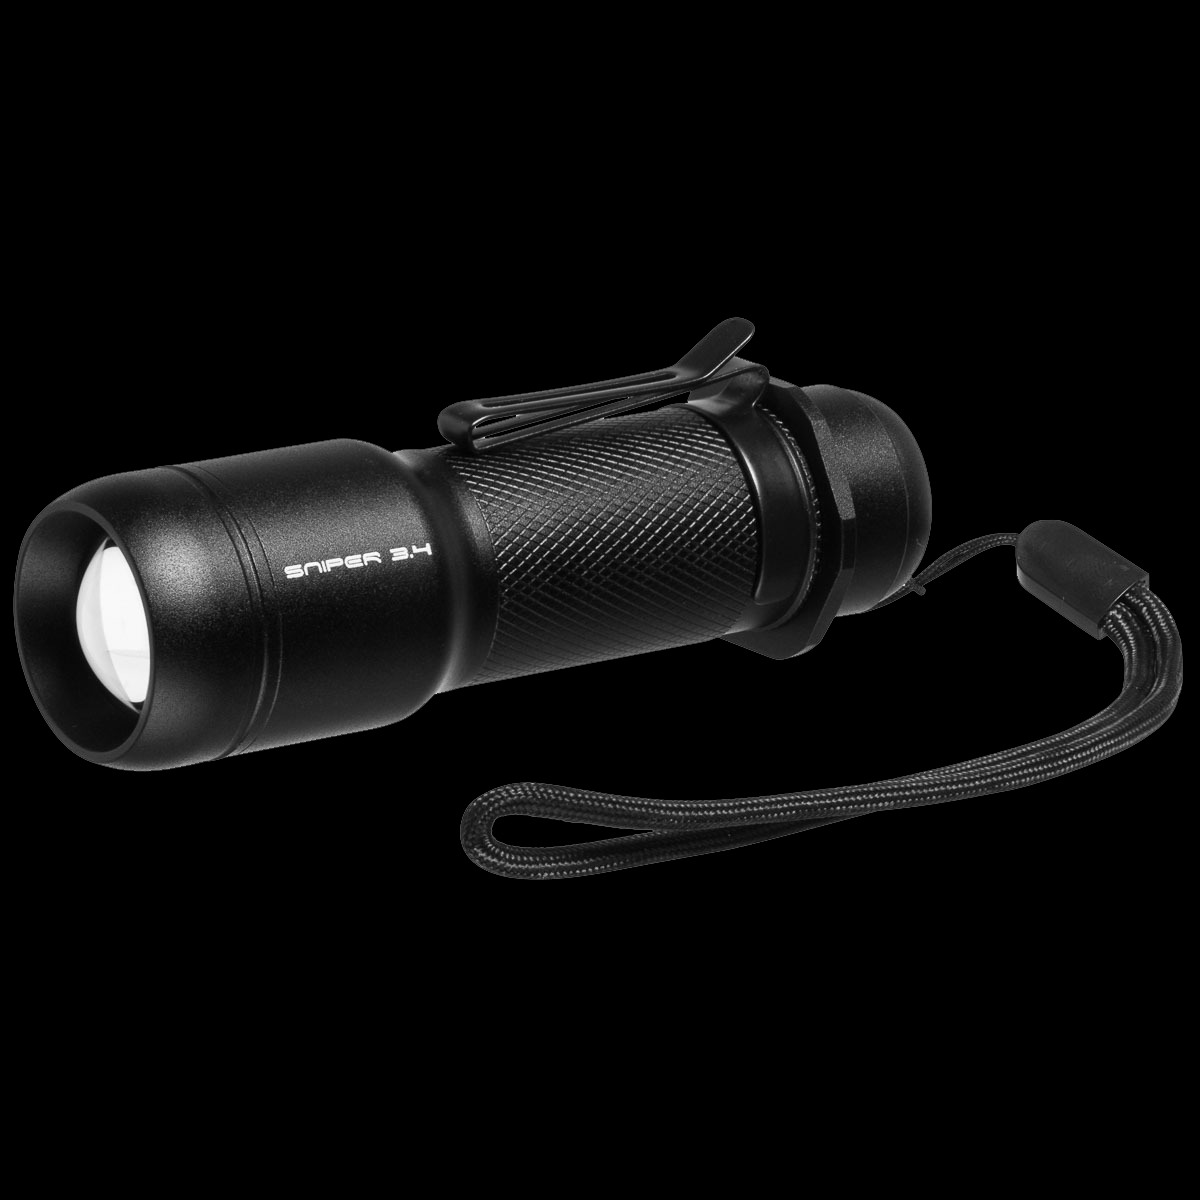 LED-Taschenlampe mit Fokusfunktion, 600 lm, SNIPER 3.4